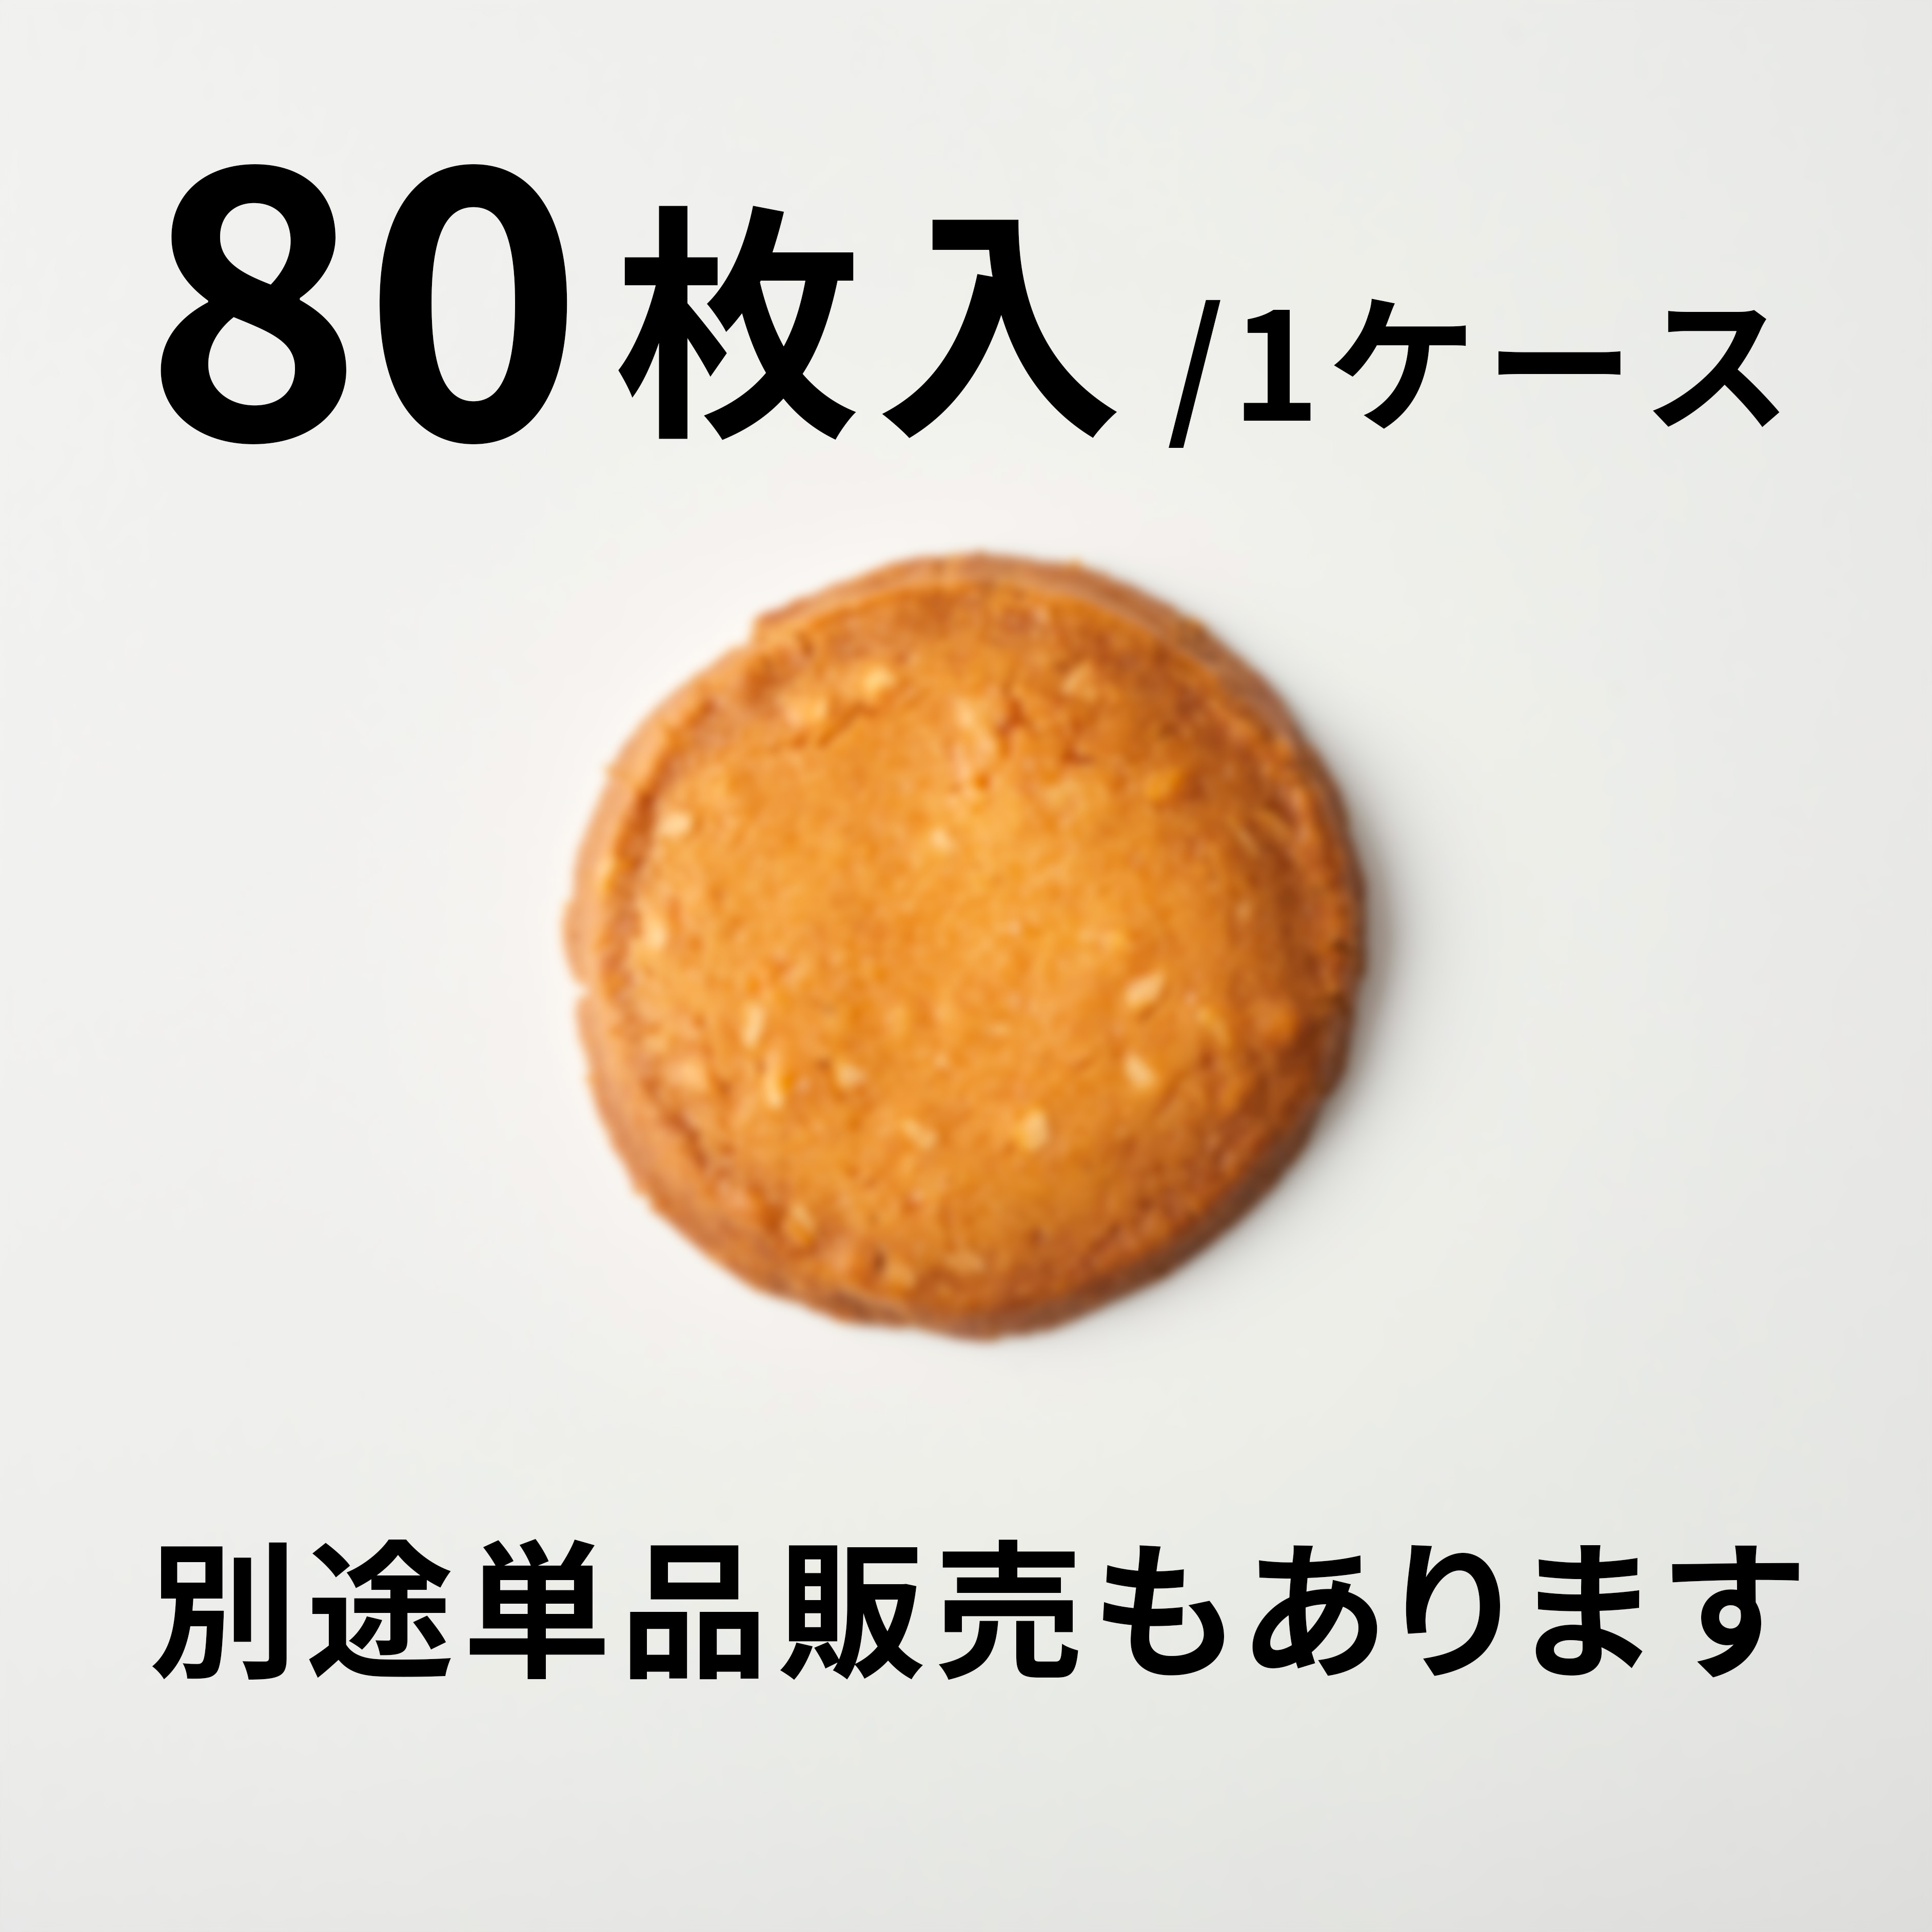 【80枚入】アーモンドのクッキー